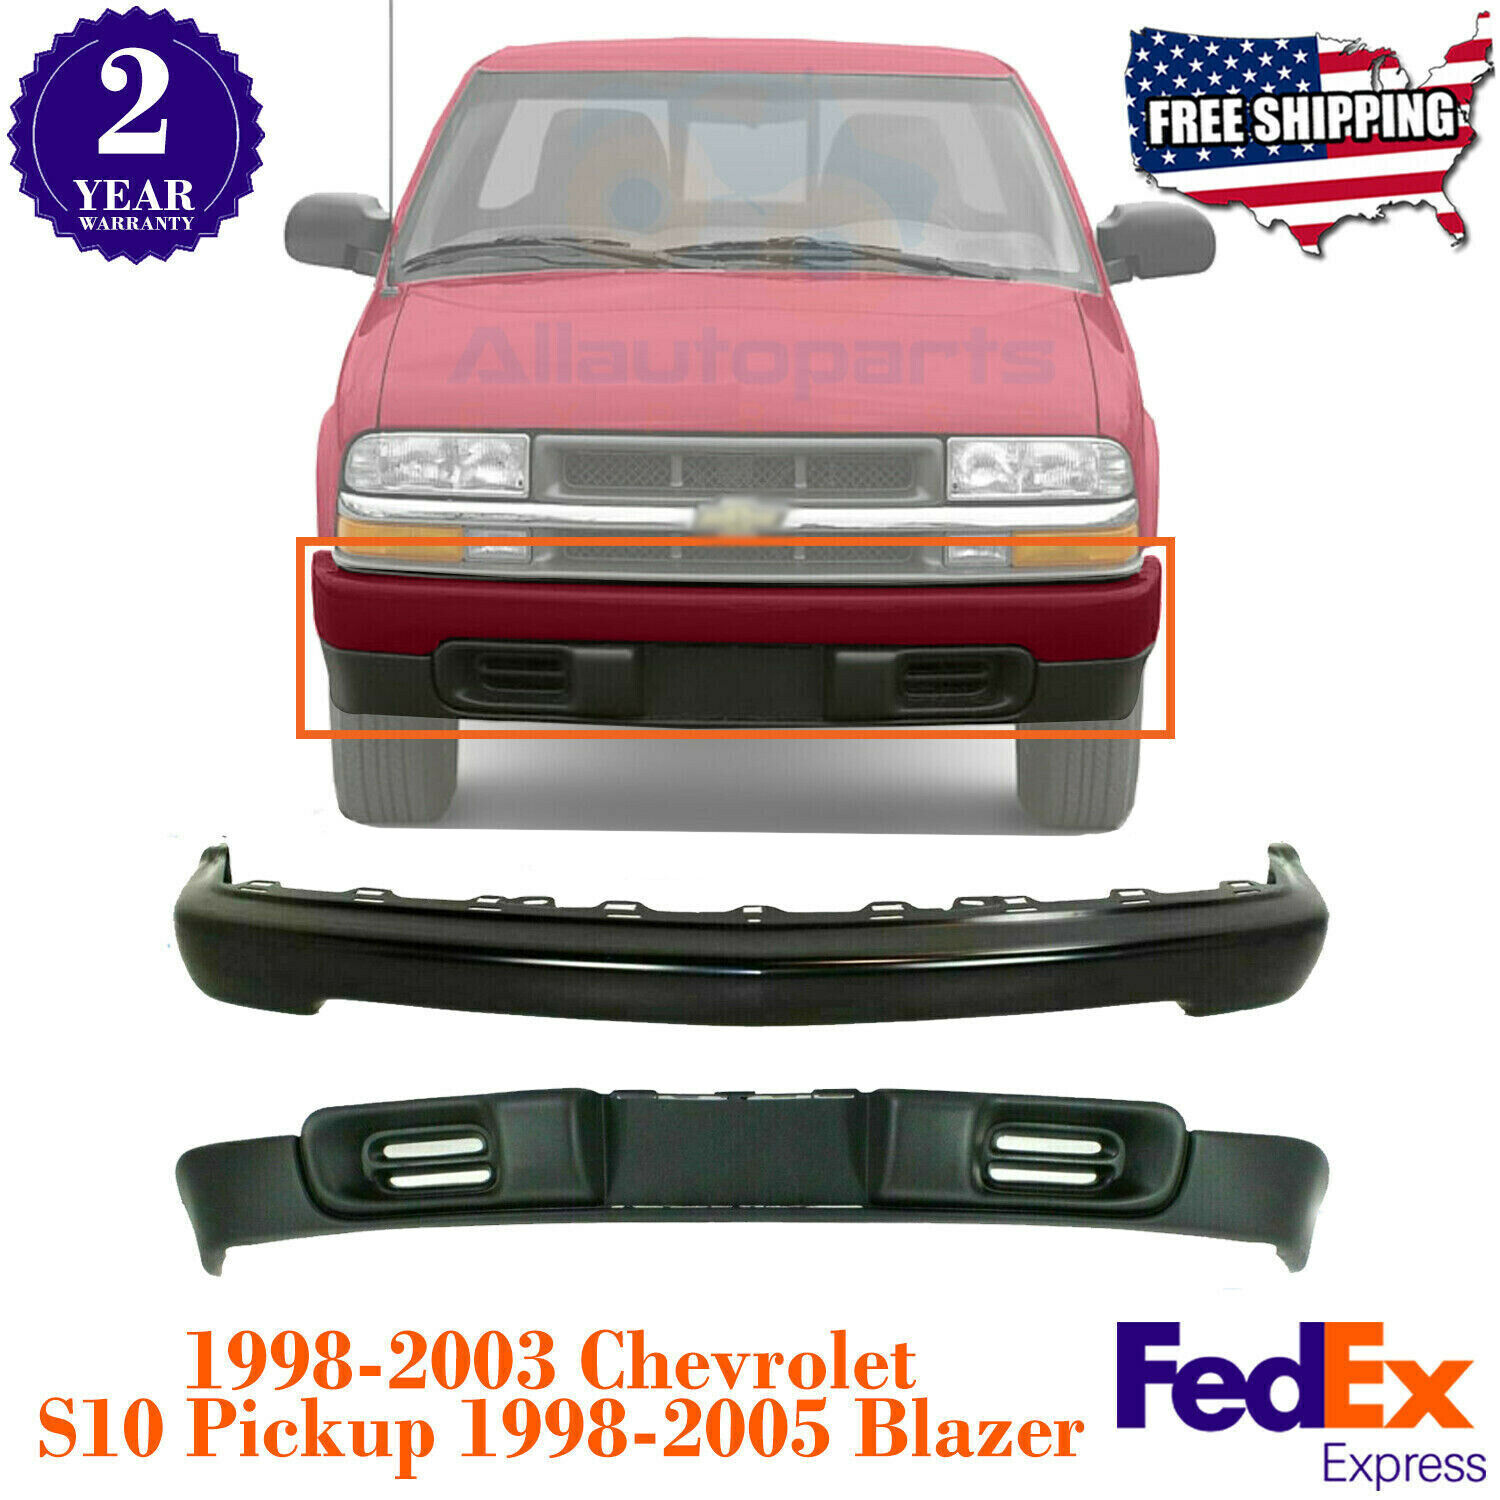 Front Primed Black Bumper Kit For 1998-2003 Chevrolet S10 Pickup/ 98-05 Blazer